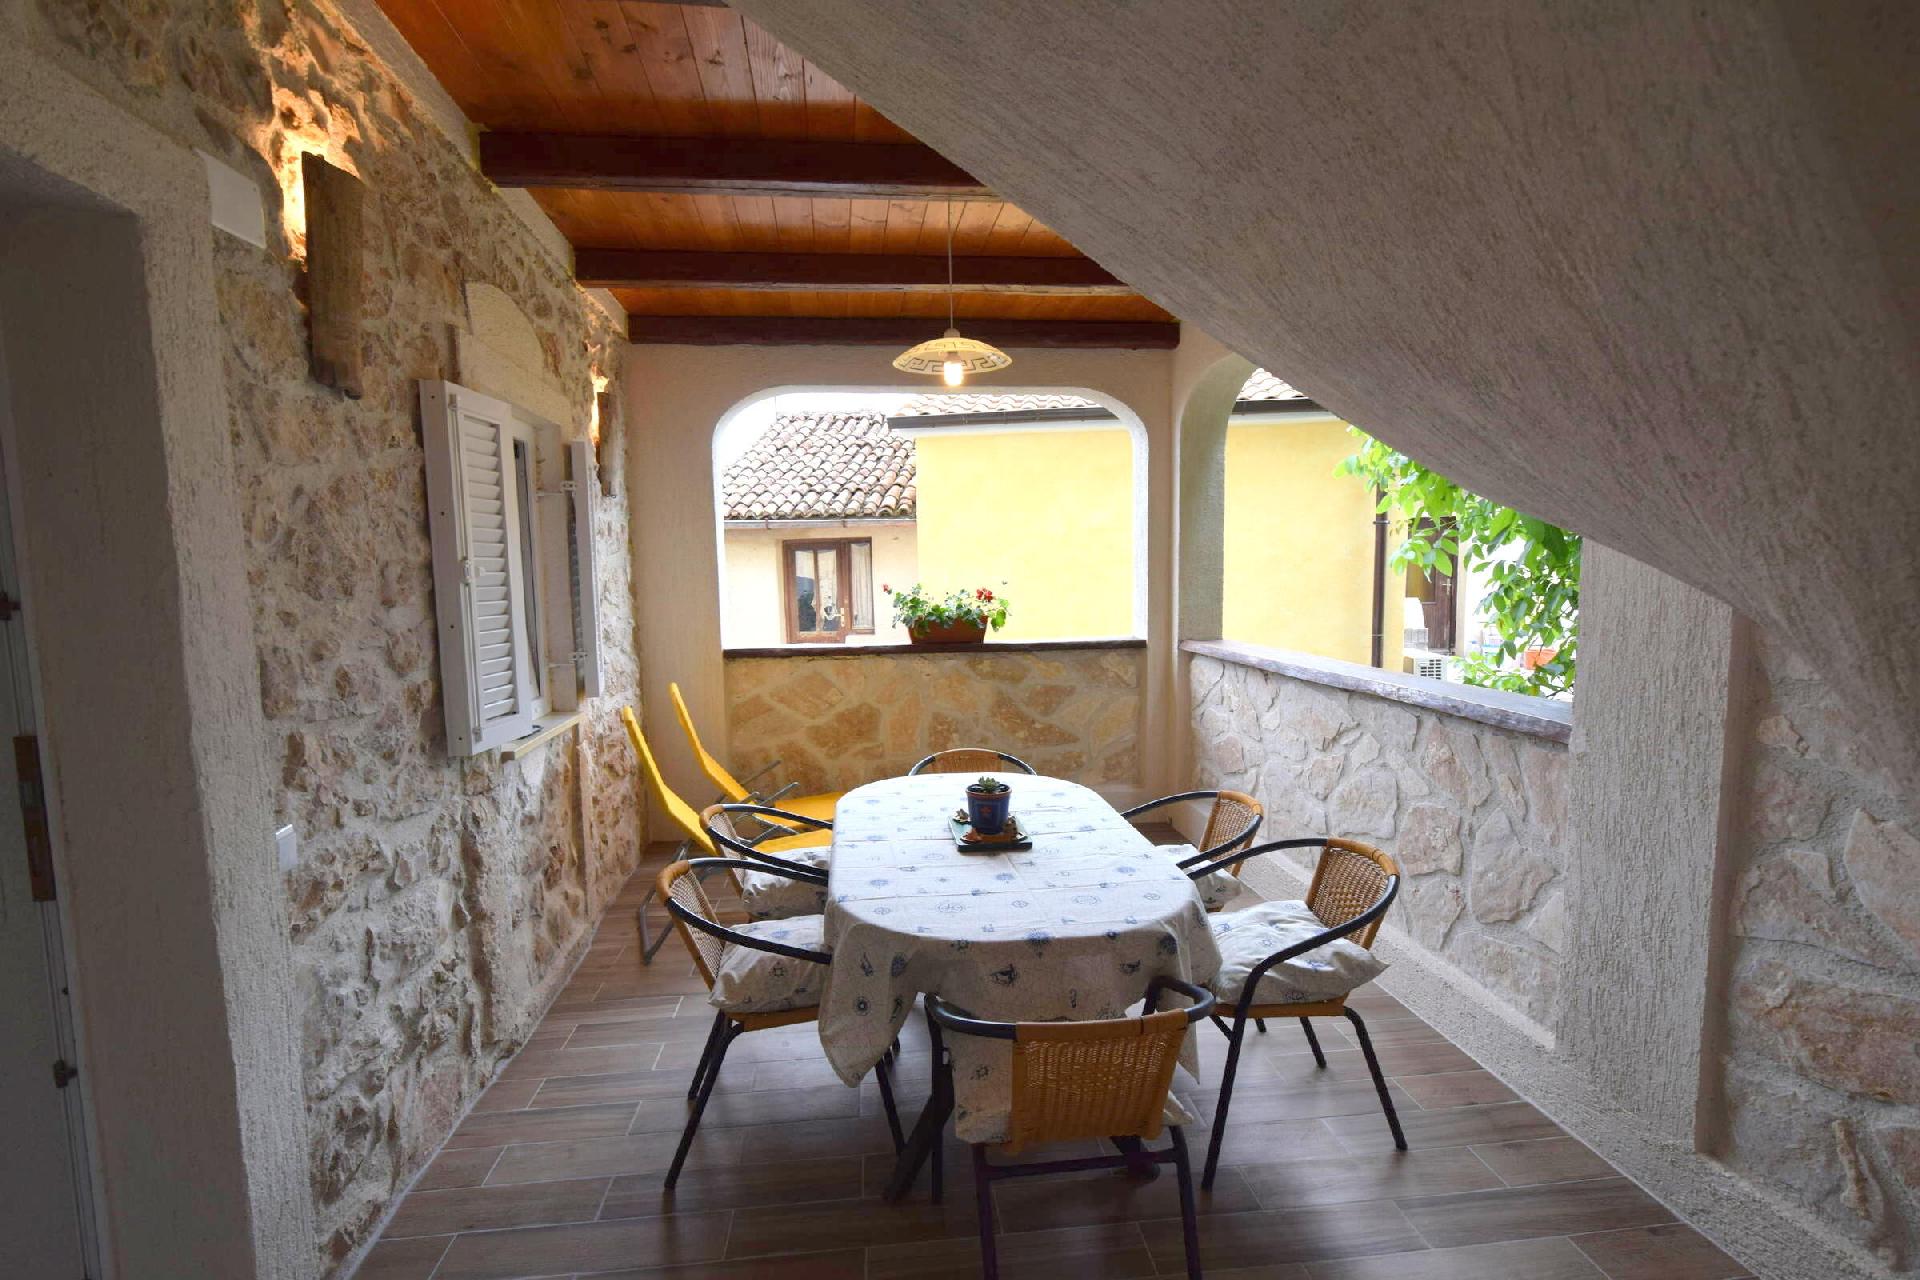 Ferienwohnung für 4 Personen ca. 64 m² i   kroatische Inseln